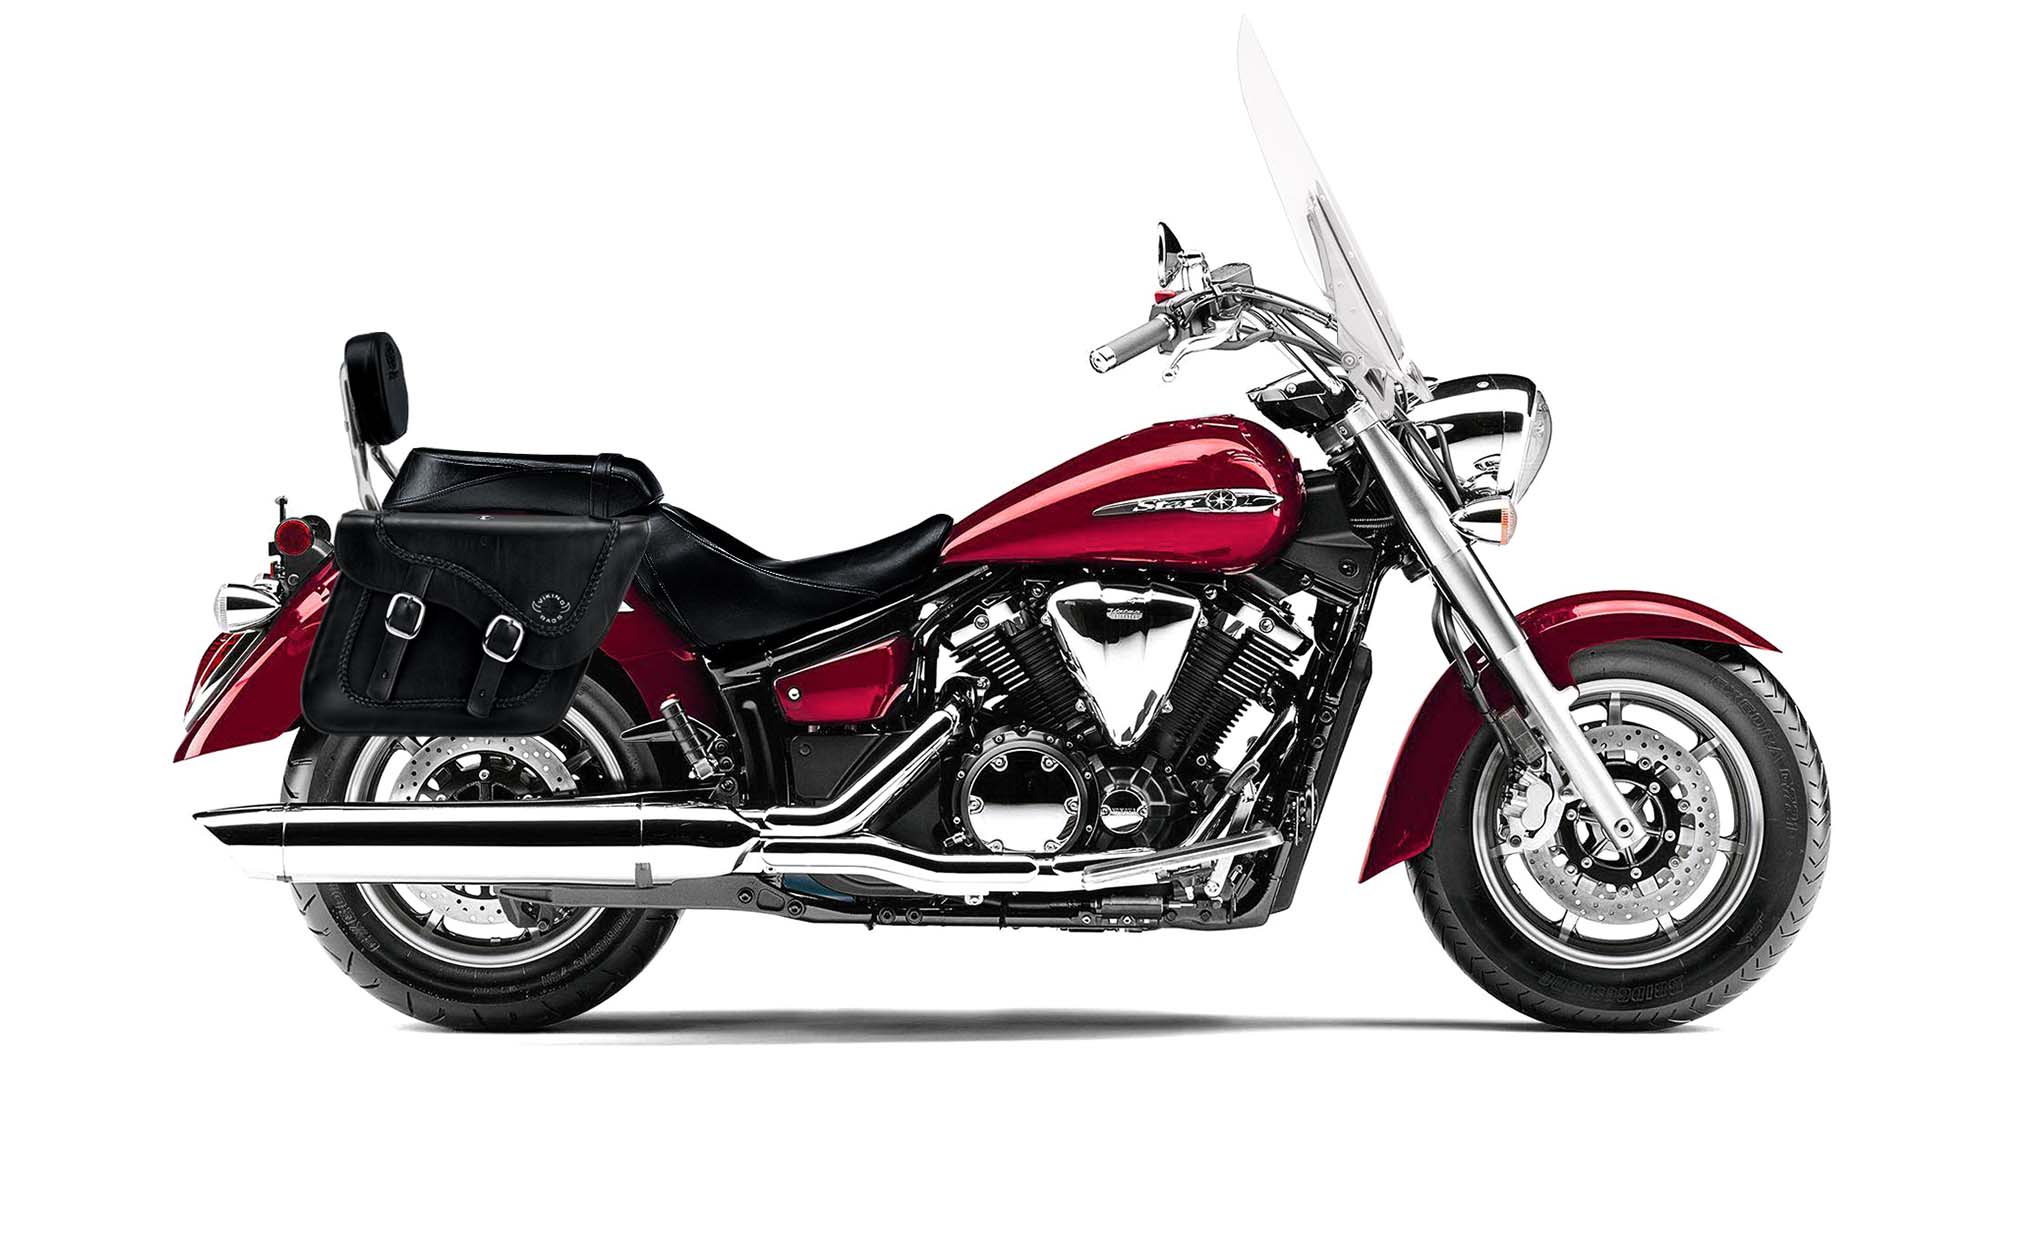 Viking Americano Yamaha V Star 1300 Tourer Braided Large Leather Motorcycle Saddlebags on Bike Photo @expand